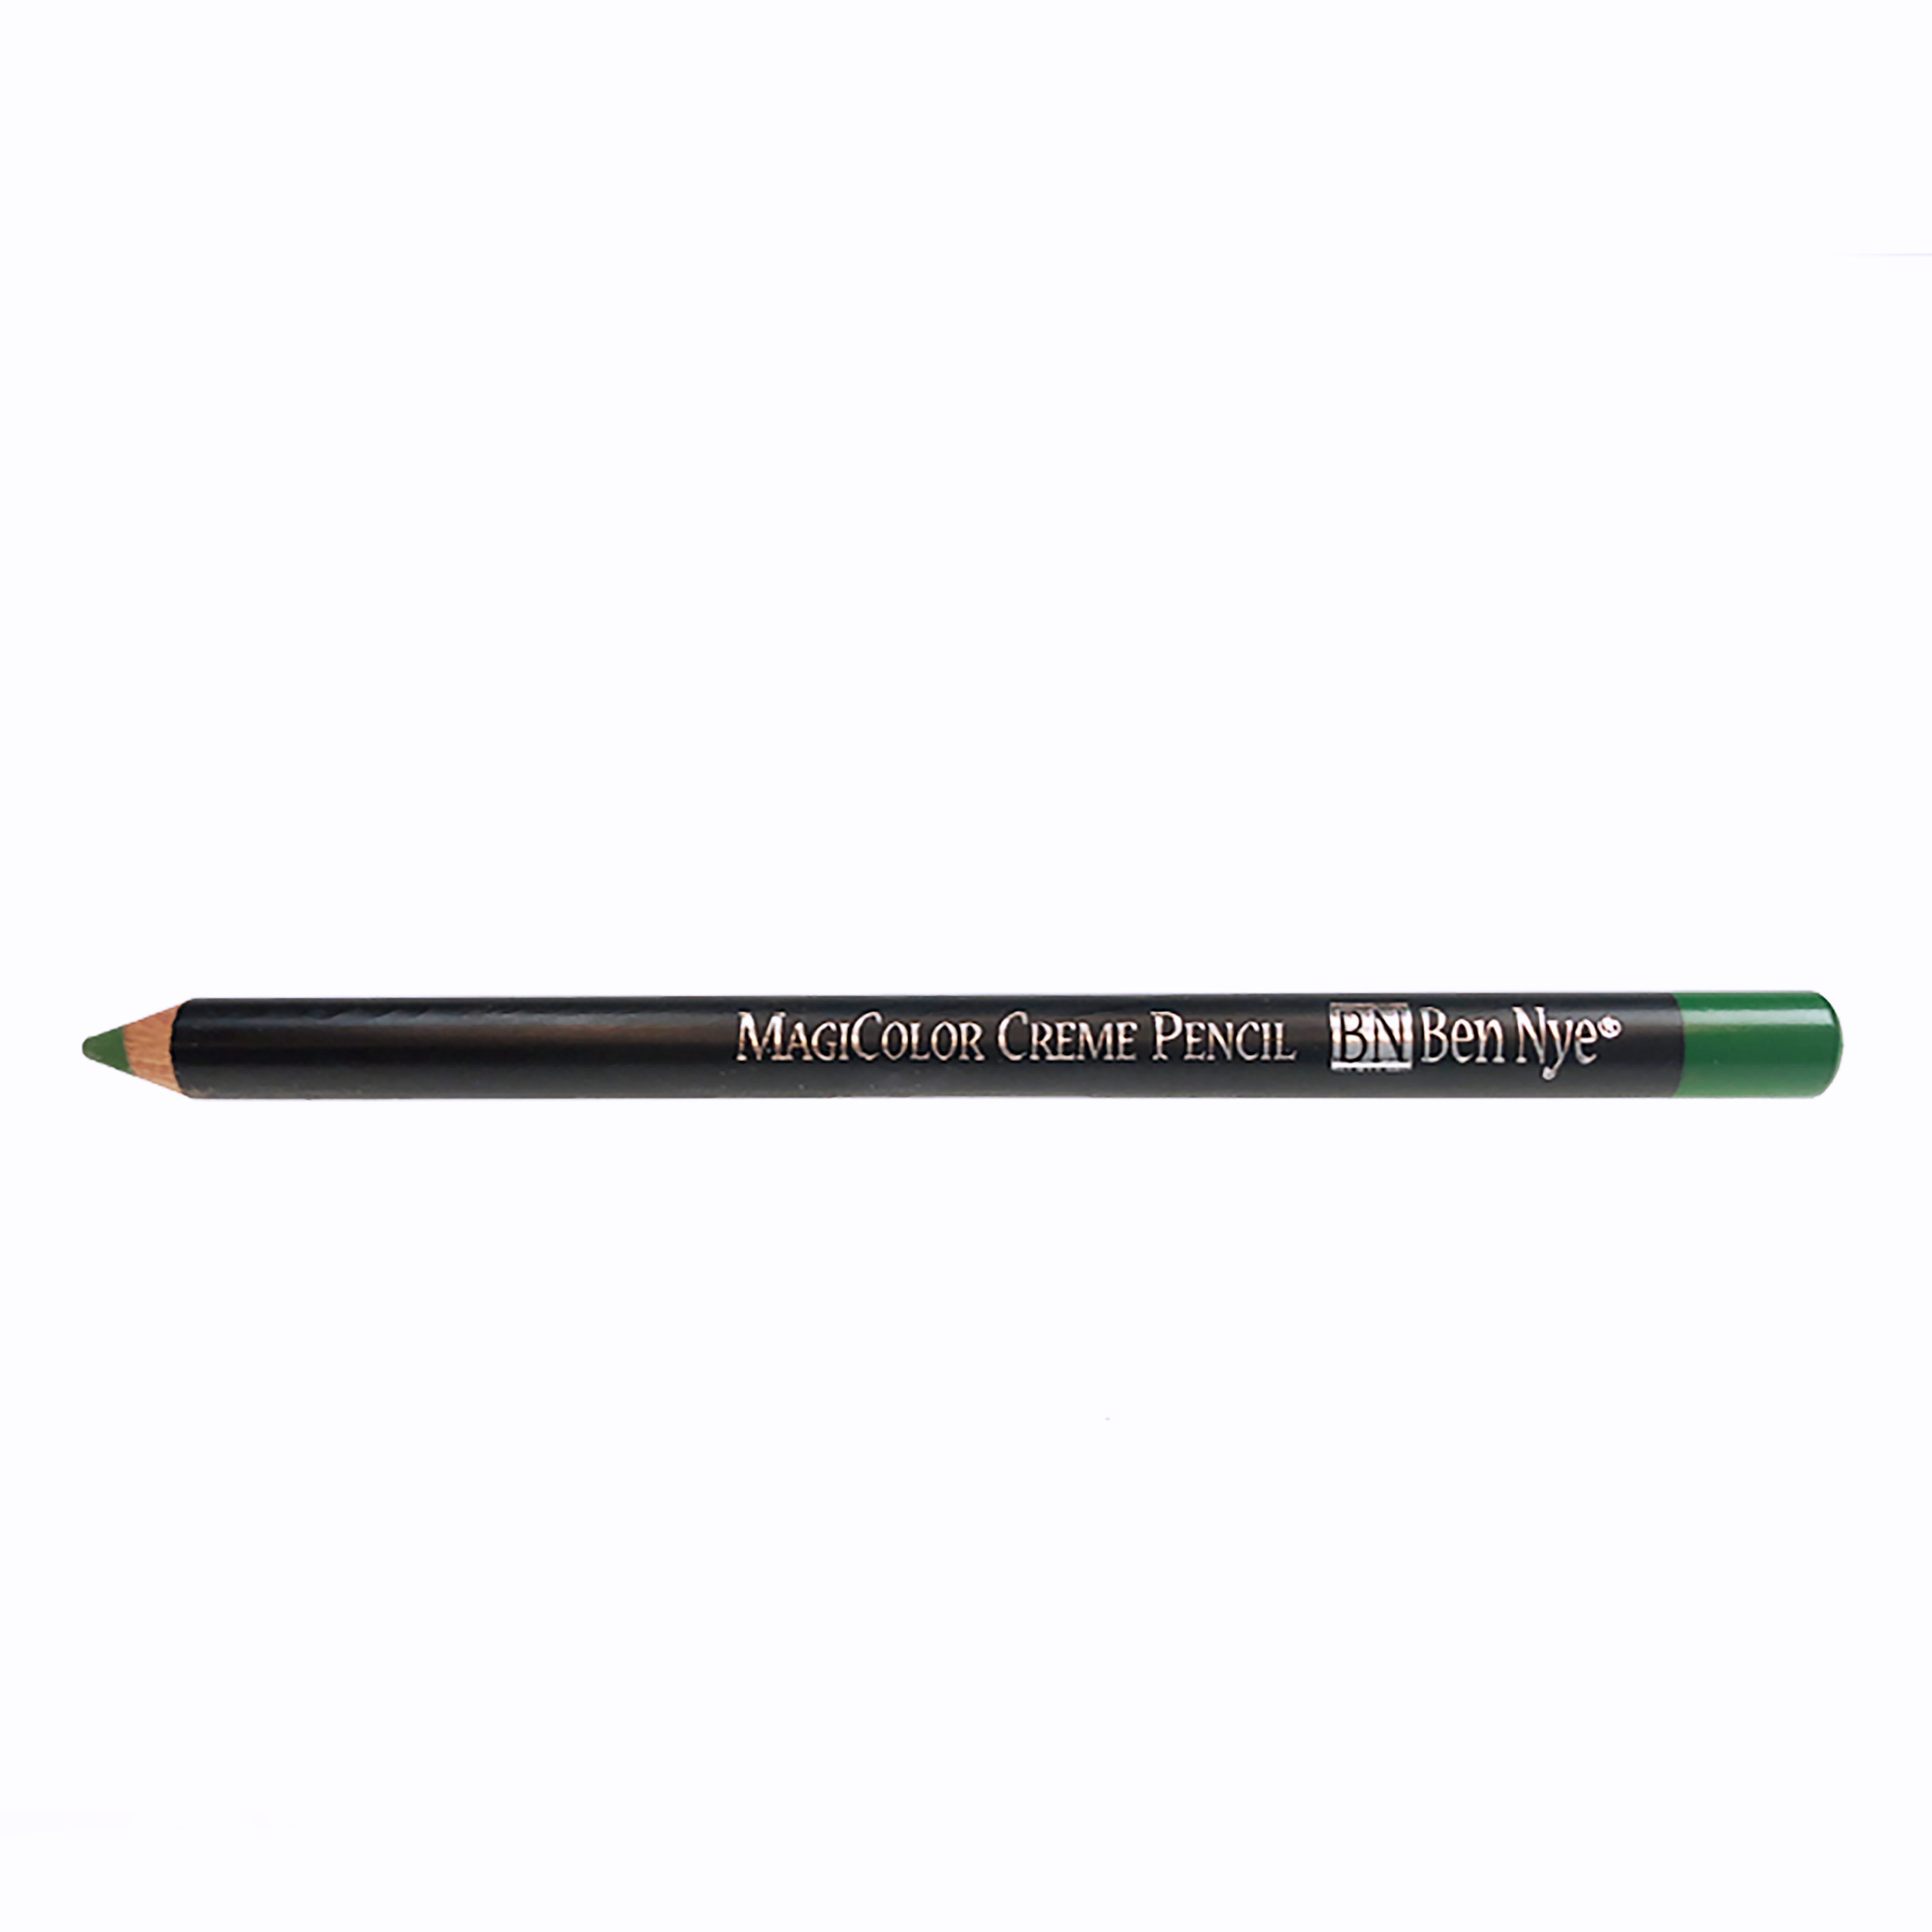 Magicolor Creme Pencils - Kelly green